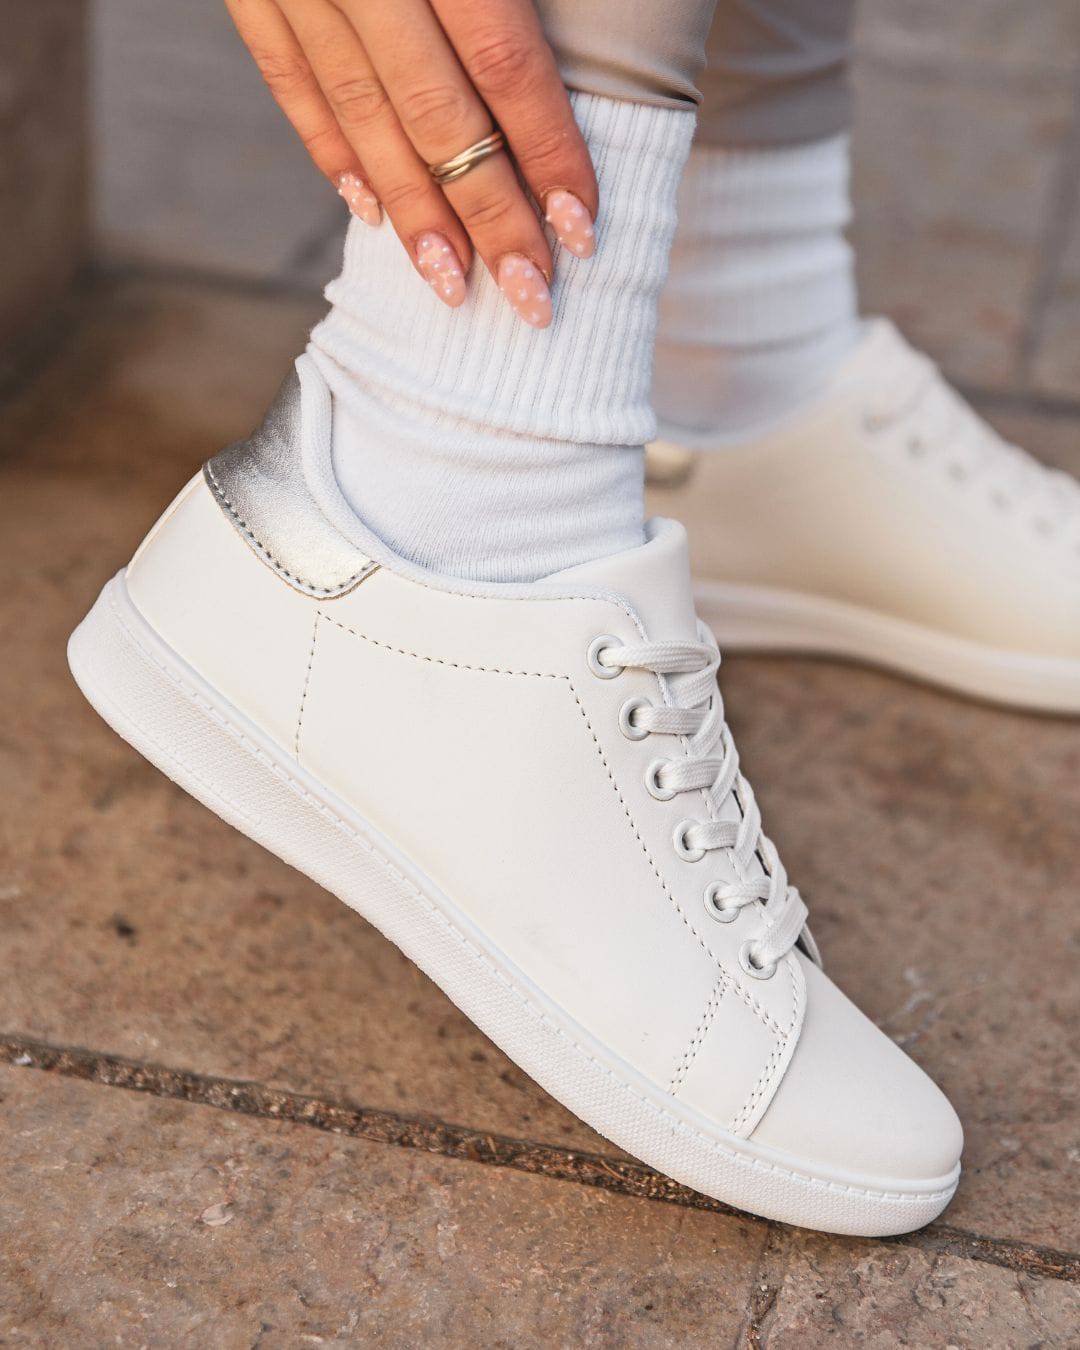 Damen-Sneaker in Weiß und Silber mit Schnürsenkeln - Jamie - Casualmode.de